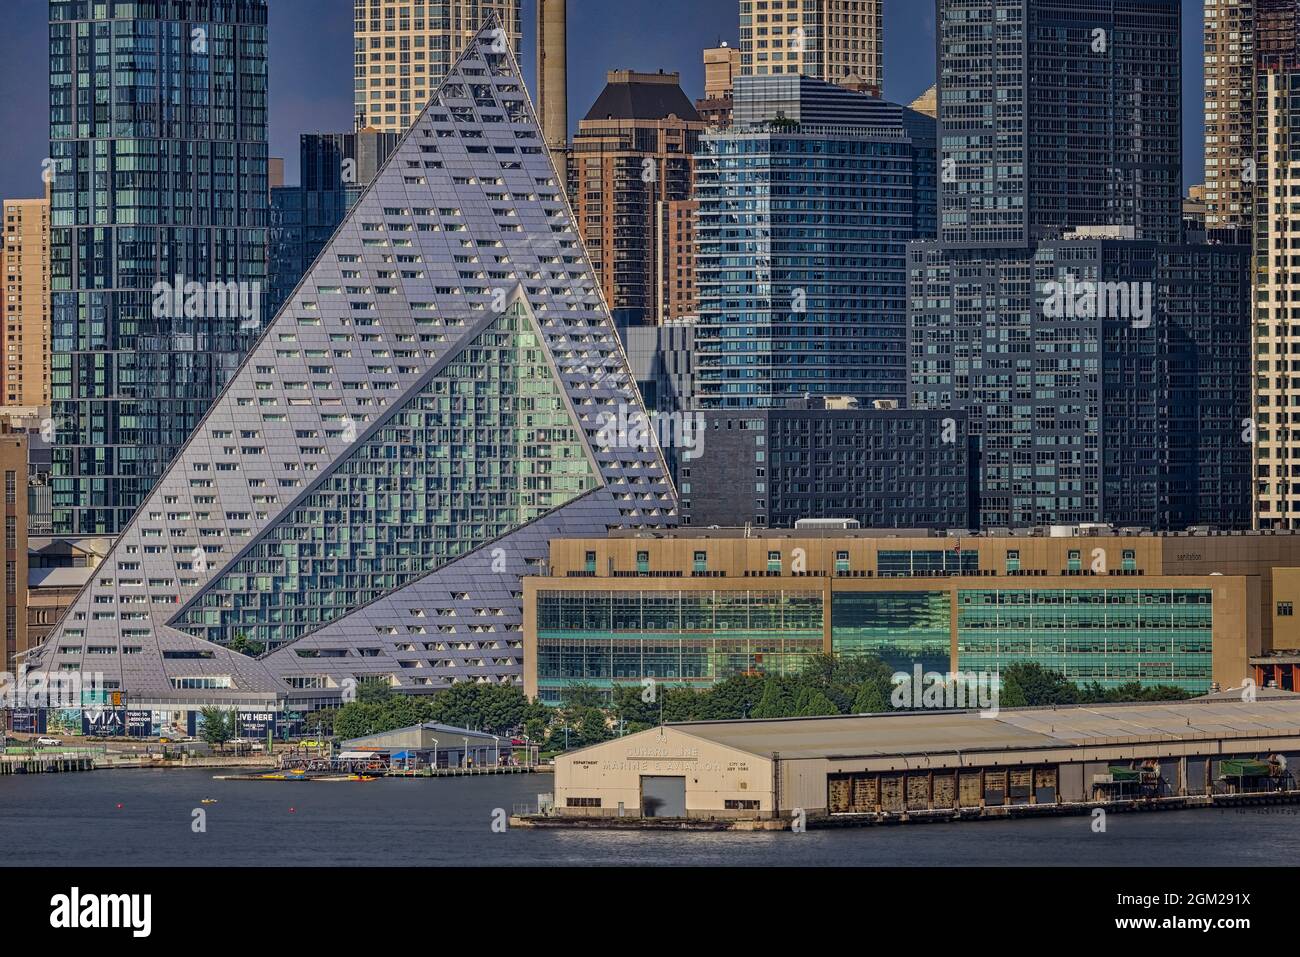 NYC 657 West Pyramid - El horizonte urbano de Manhattan en el centro de la ciudad de Nueva York está bañado por la cálida luz del sol y los tonos frescos durante la hora azul Foto de stock